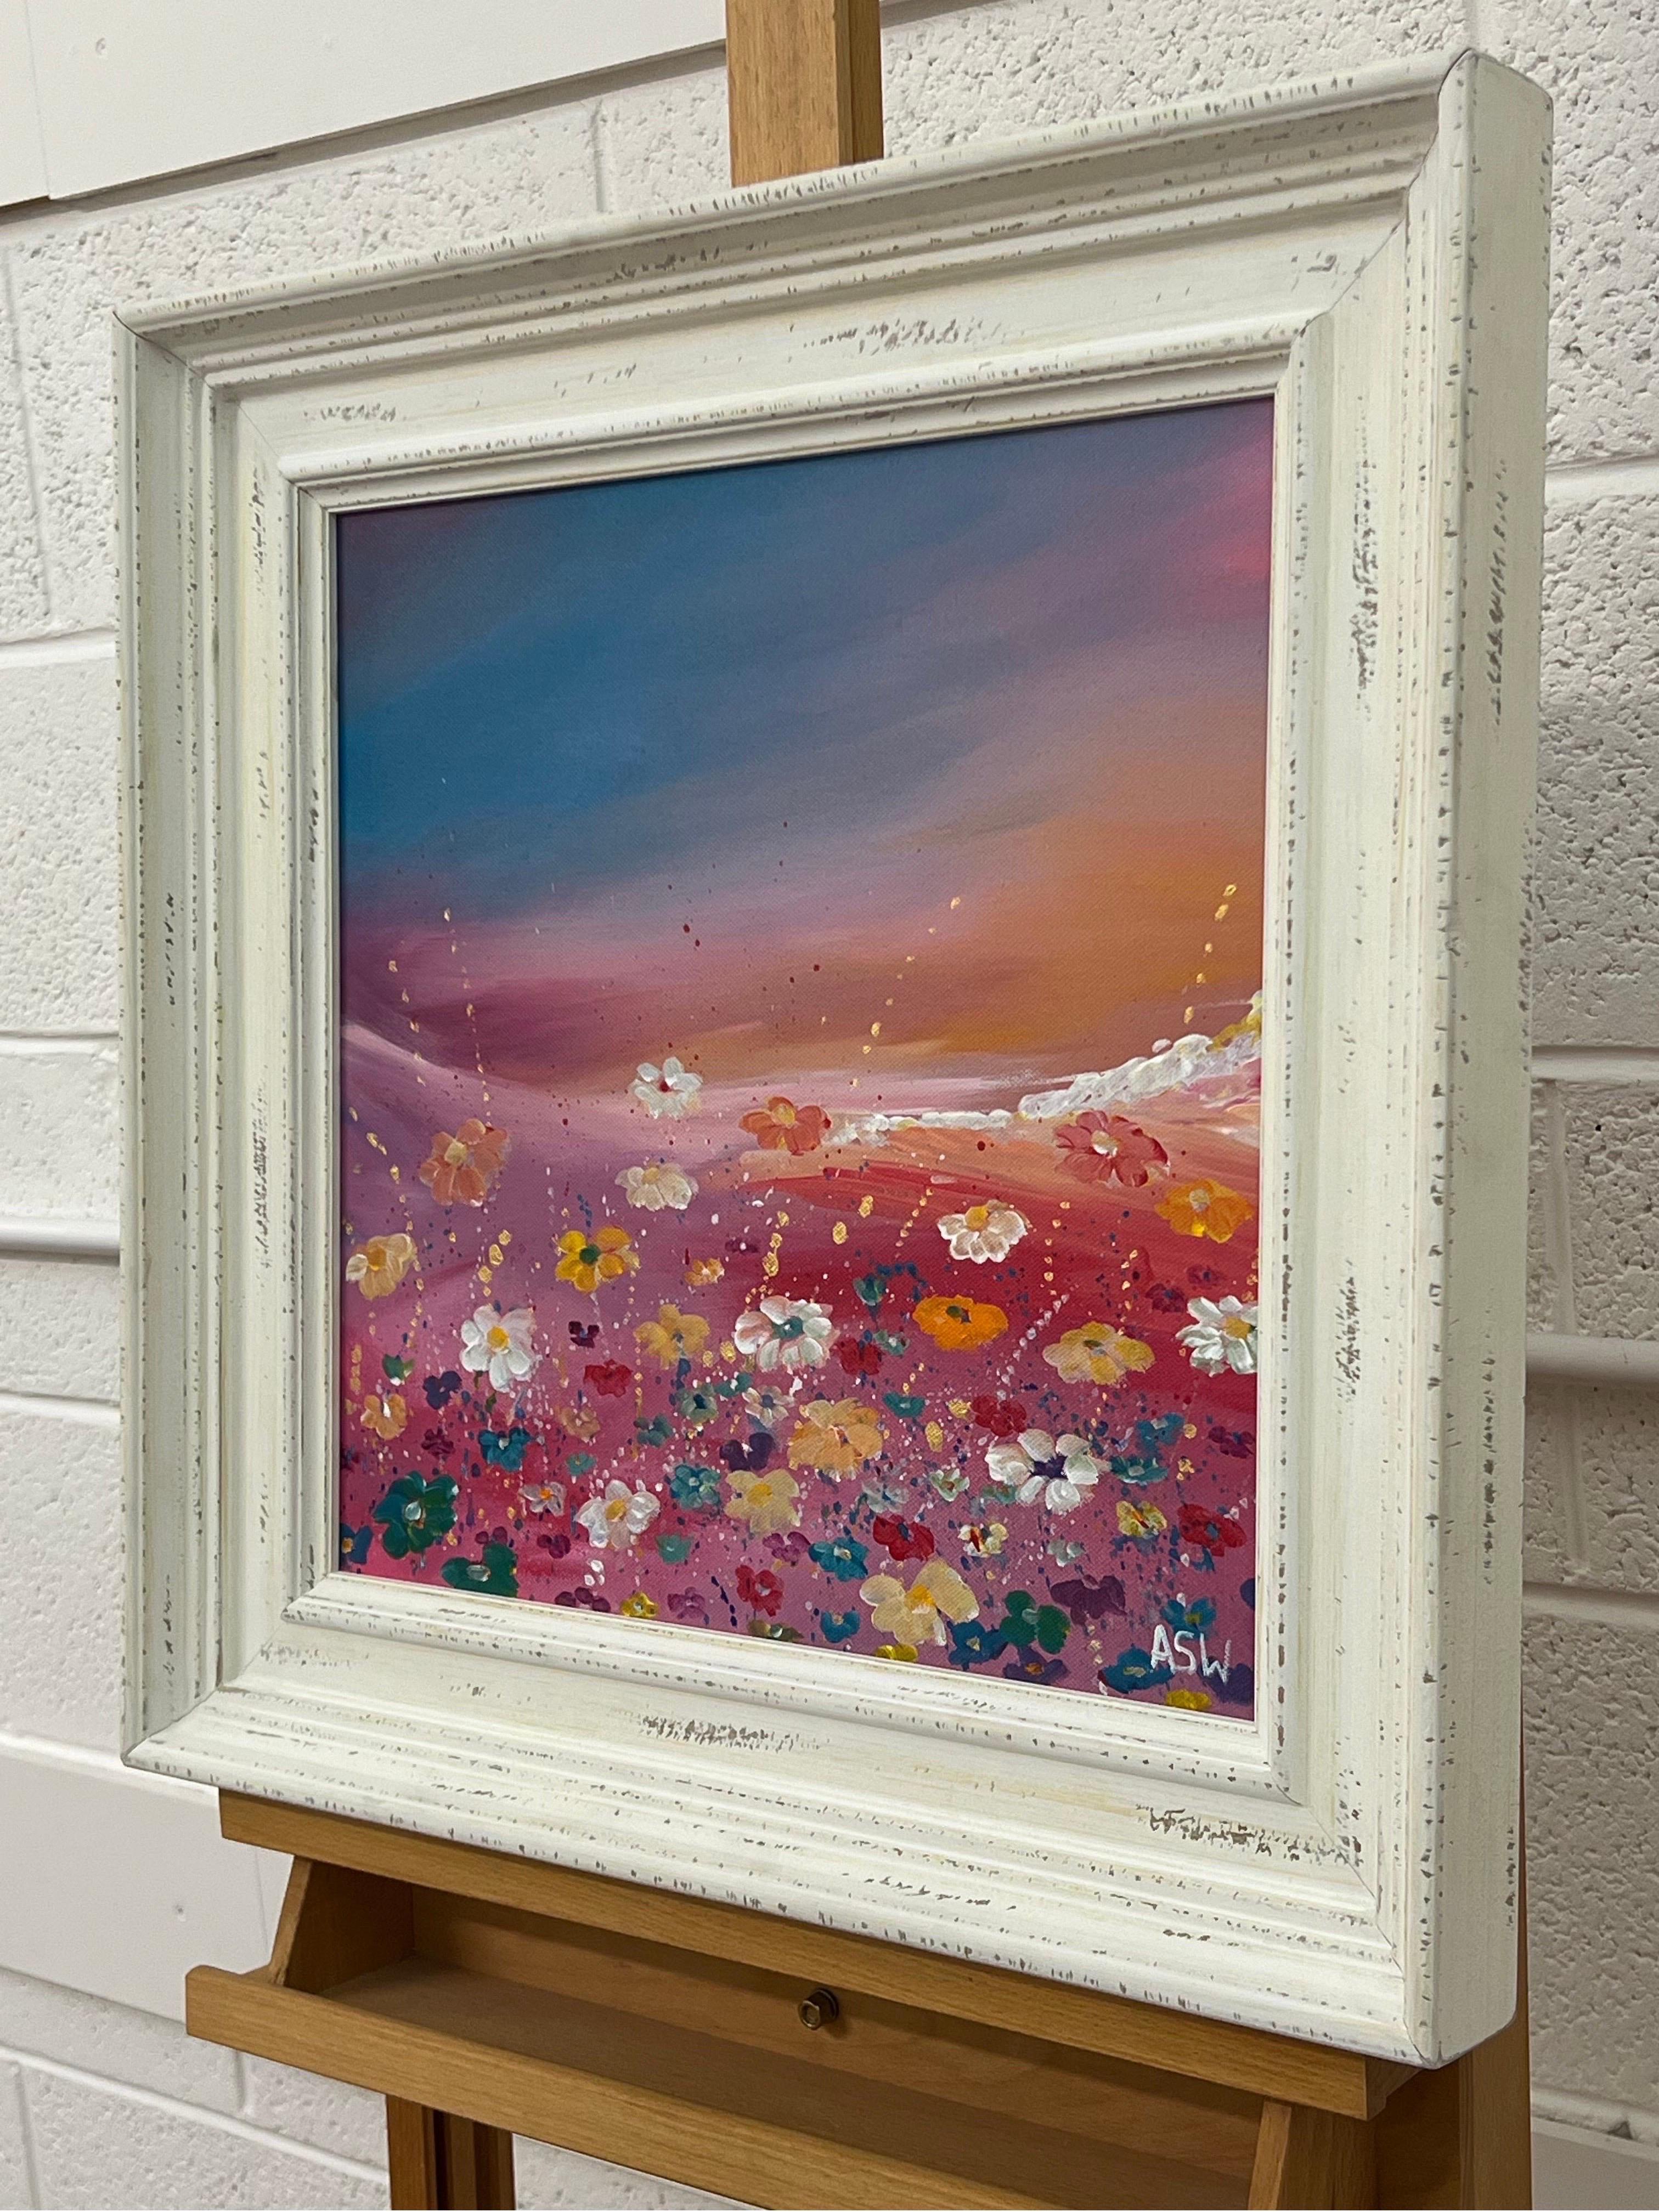 Fleurs sauvages multicolores sur fond turquoise et rose par l'artiste contemporaine Angela Wakefield. Il s'agit d'un paysage imaginaire et rêveur avec des fleurs abstraites dans une prairie à flanc de colline.

L'œuvre d'art mesure 16 x 16 pouces
Le